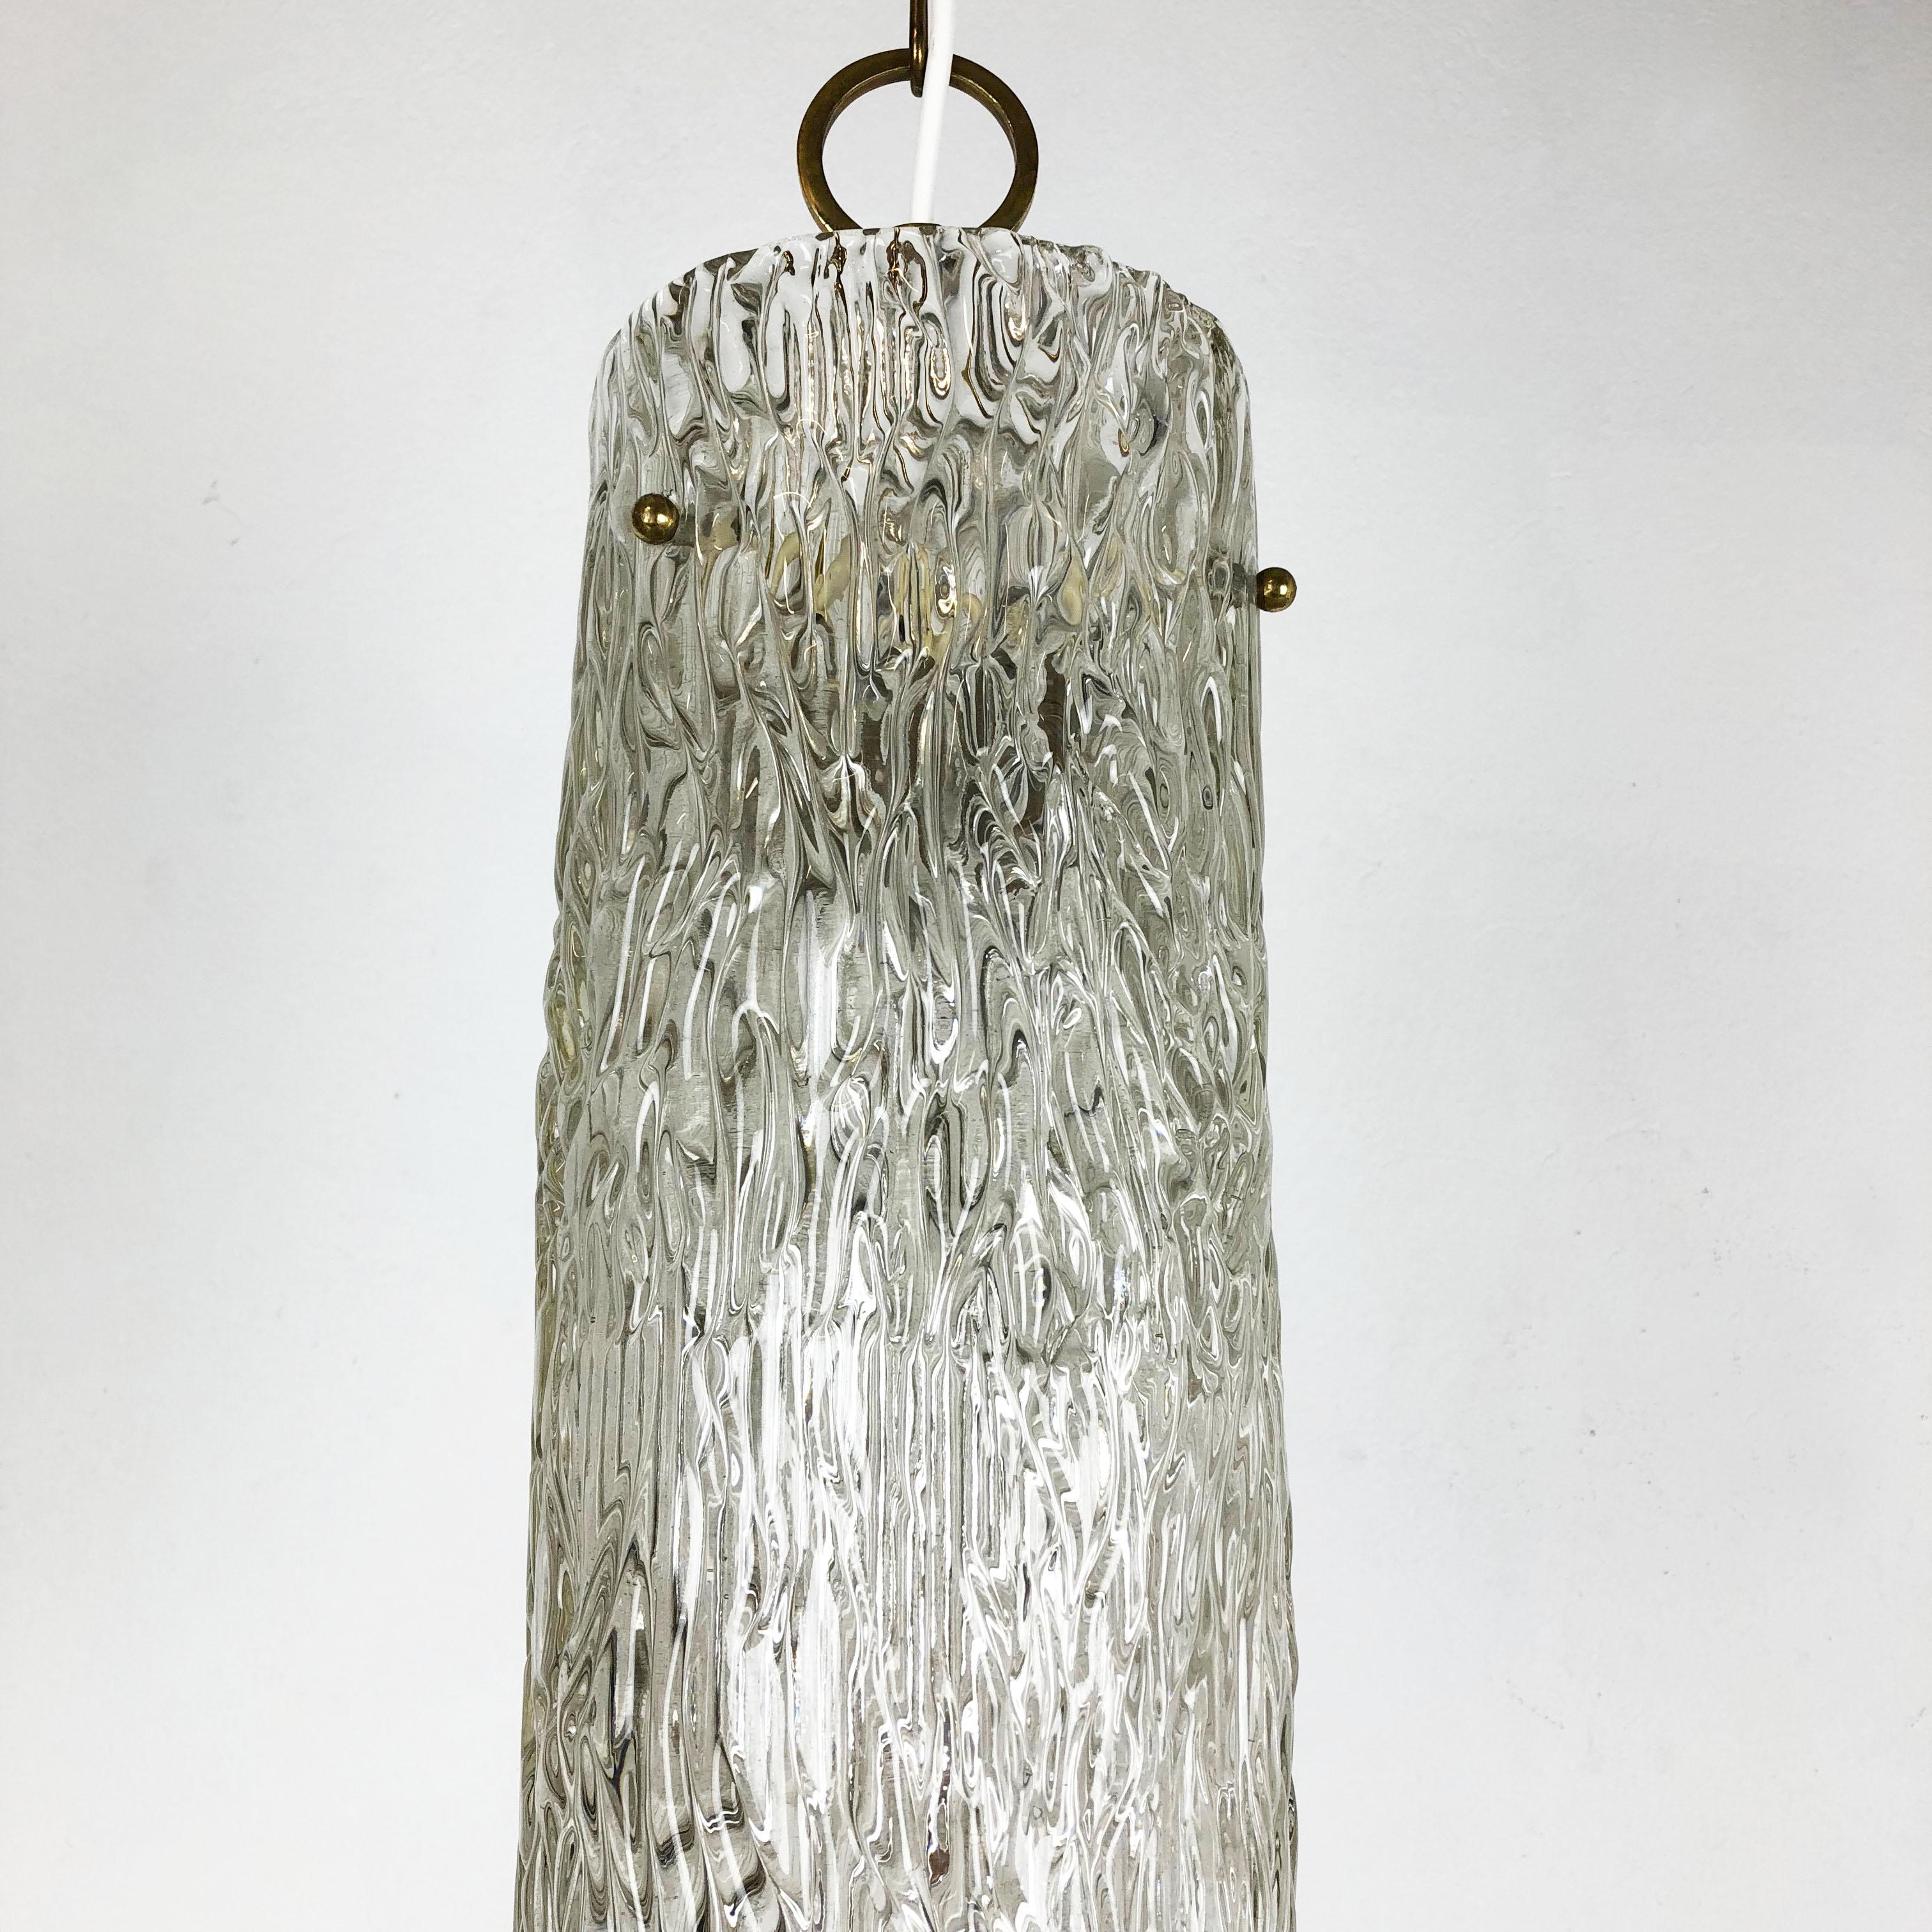 Hollywood Regency Ice Glass Hanging Light, J. T. Kalmar Lights, Austria, 1950s For Sale 1